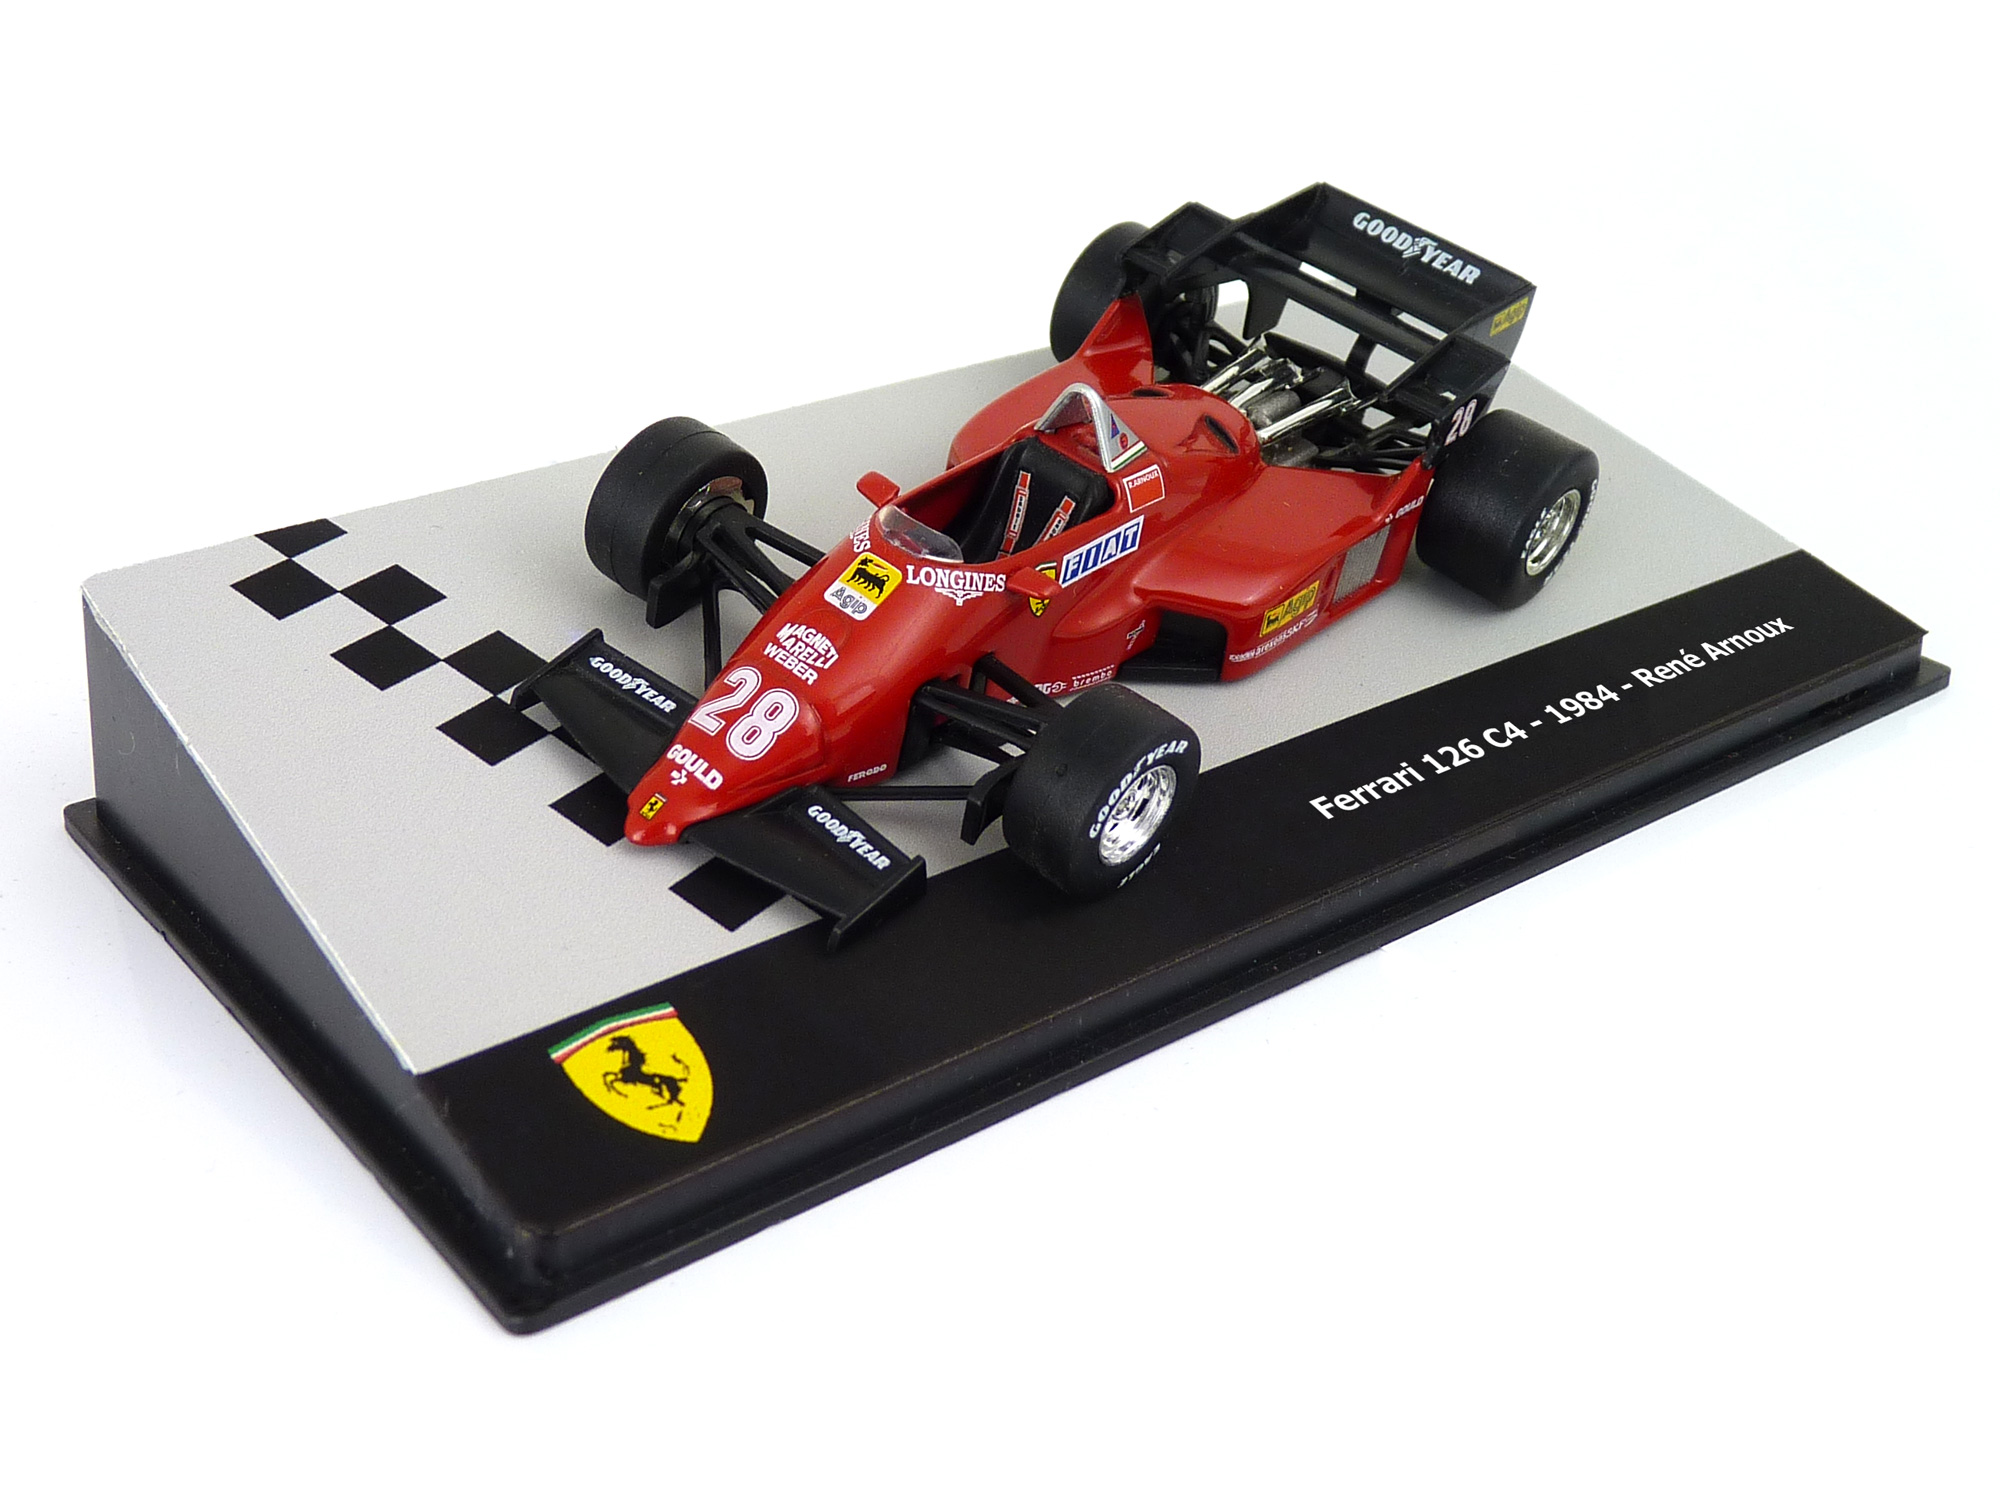 71 - Ferrari 126 C4